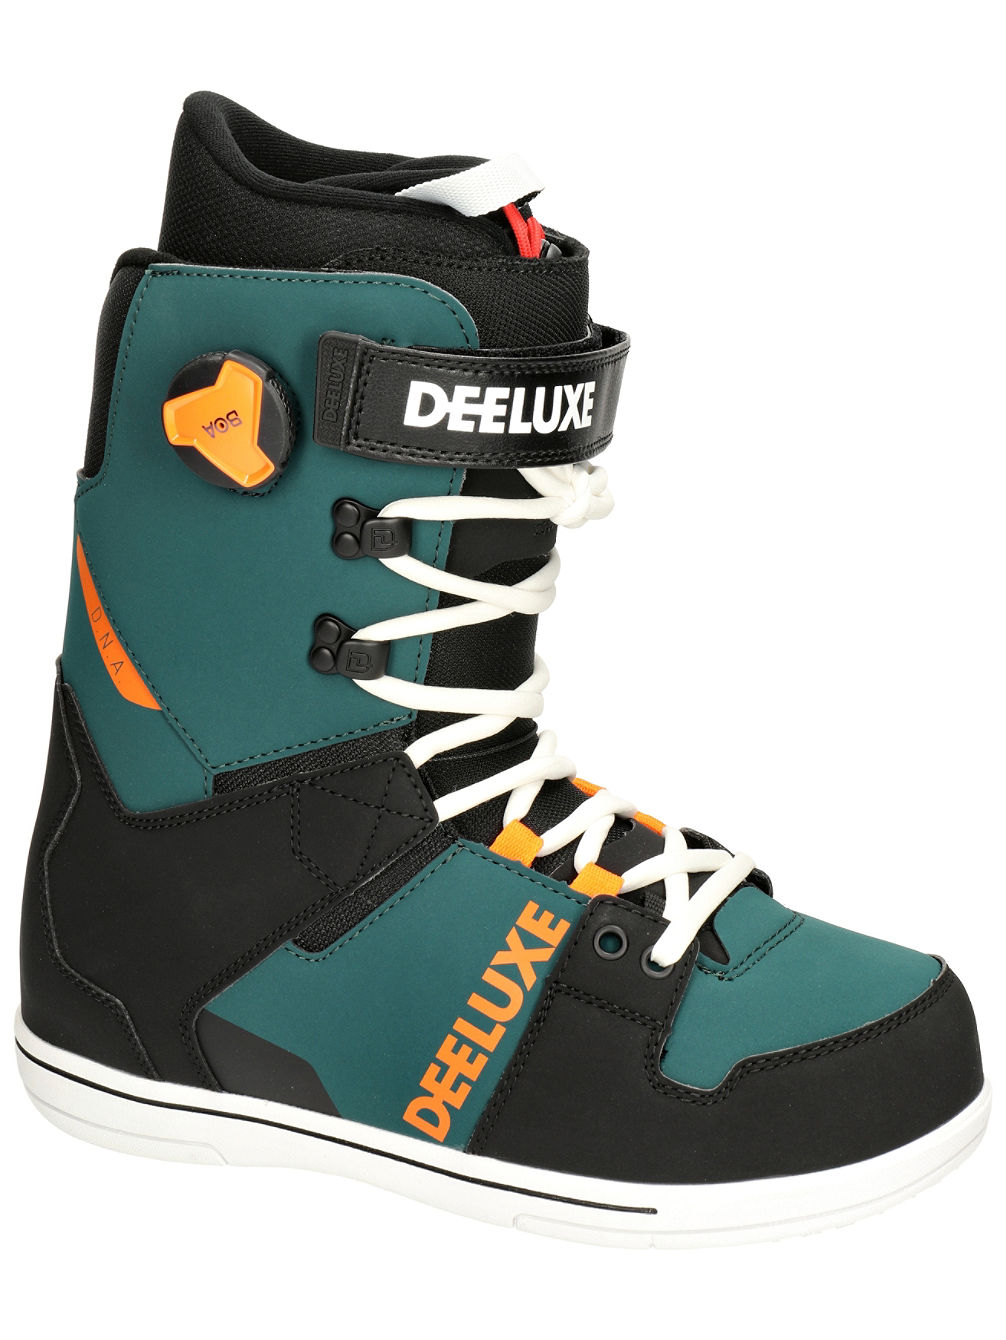 Boots Snowboard DEELUXE DNA Juice Green 2022 43.5